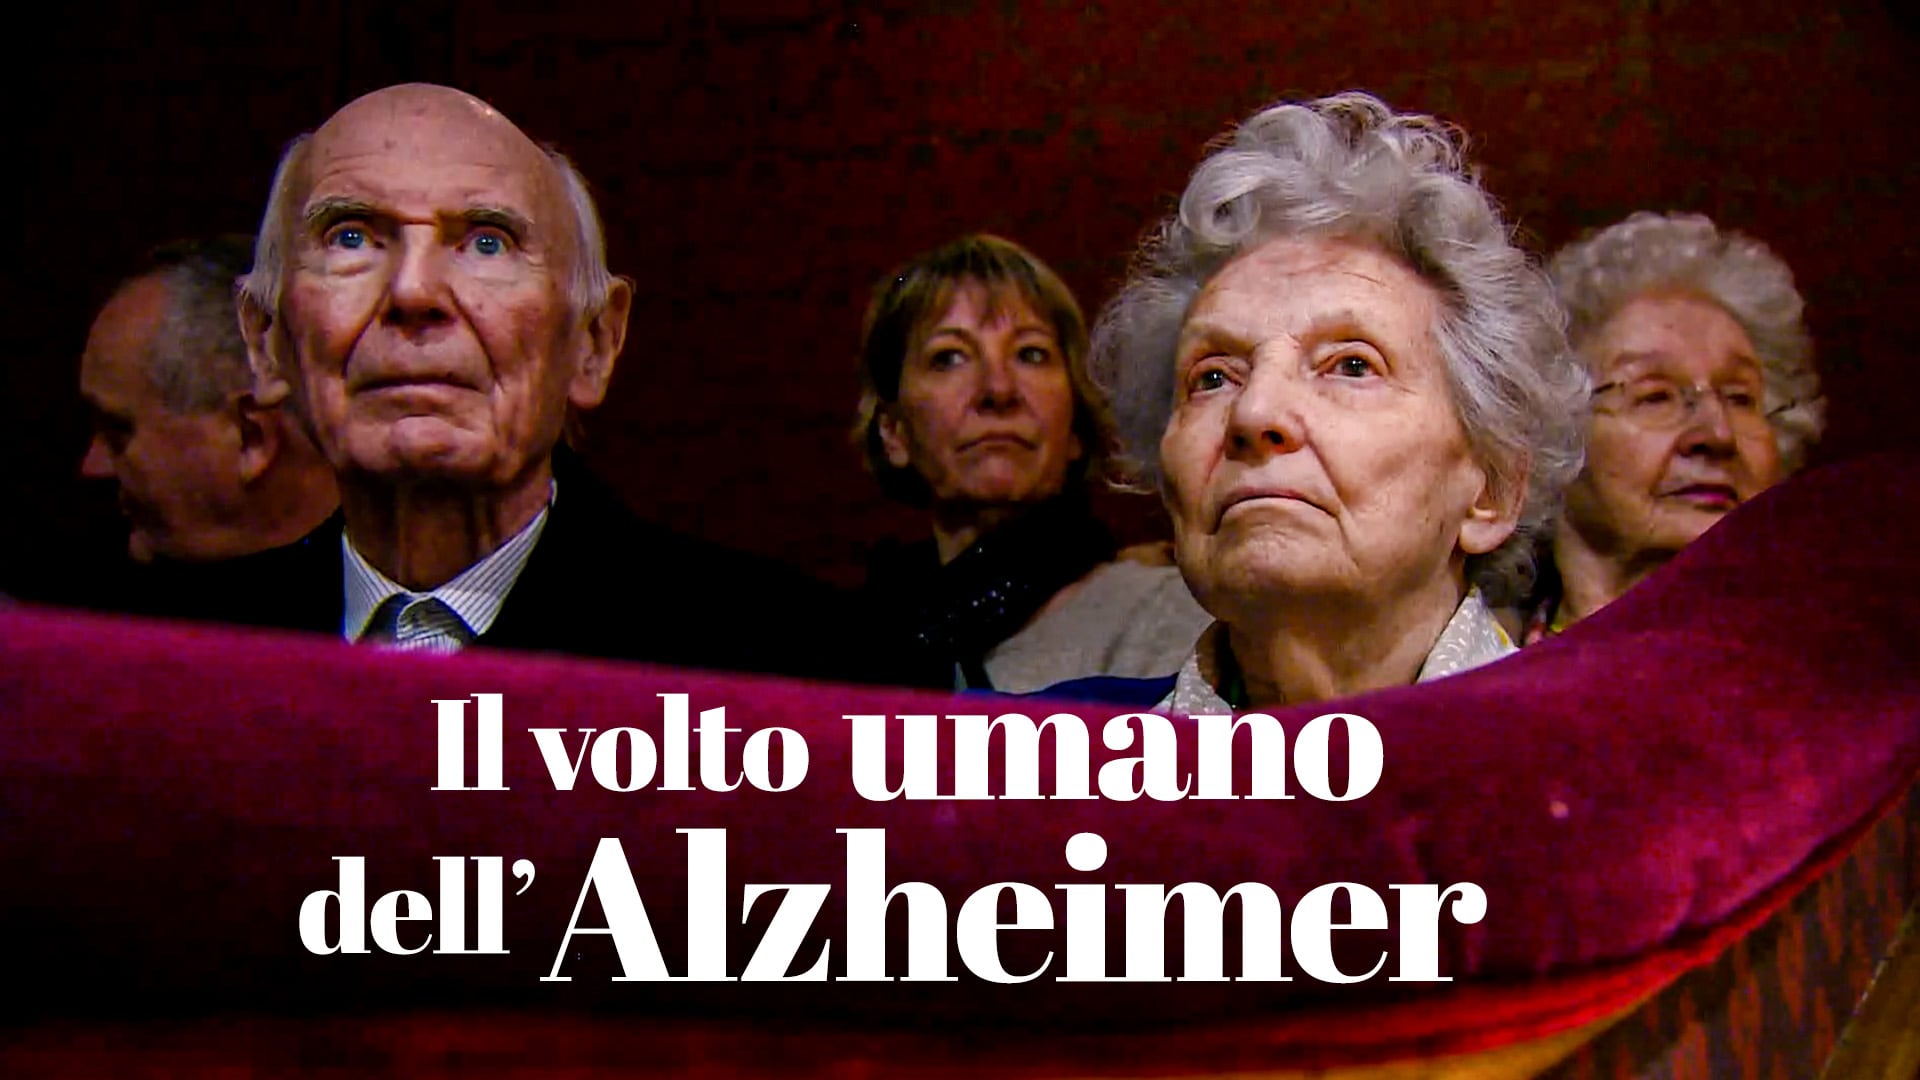 Il volto umano dell'Alzheimer